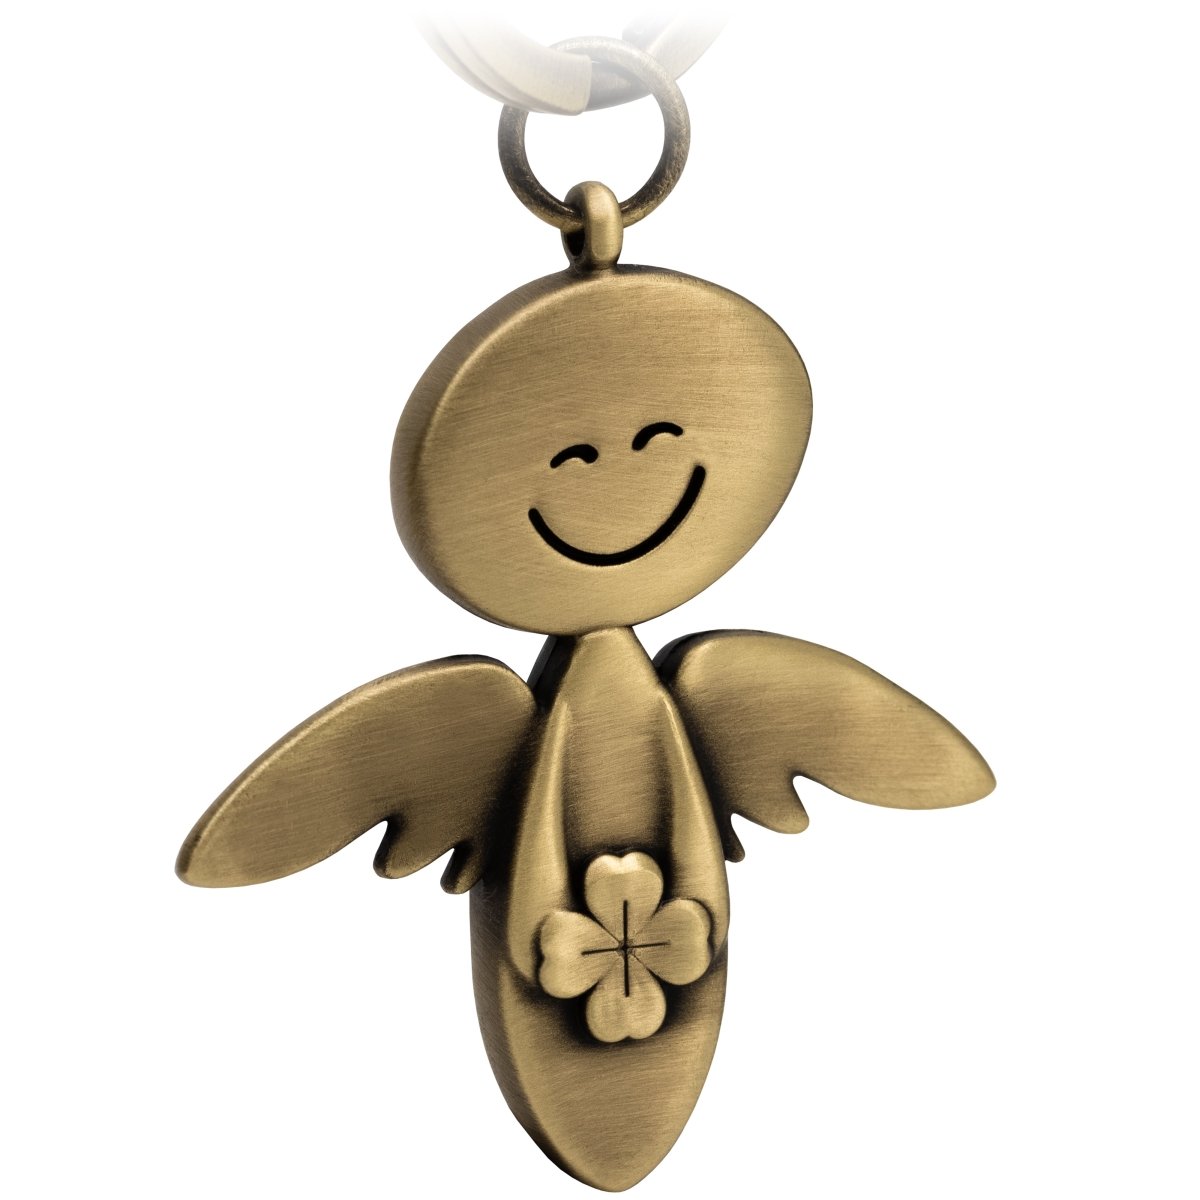 "Smile" mit Kleeblatt - Schutzengel Schlüsselanhänger - Engel Glücksbringer - Viel Glück Glücksengel - FABACH#farbe_antique bronze